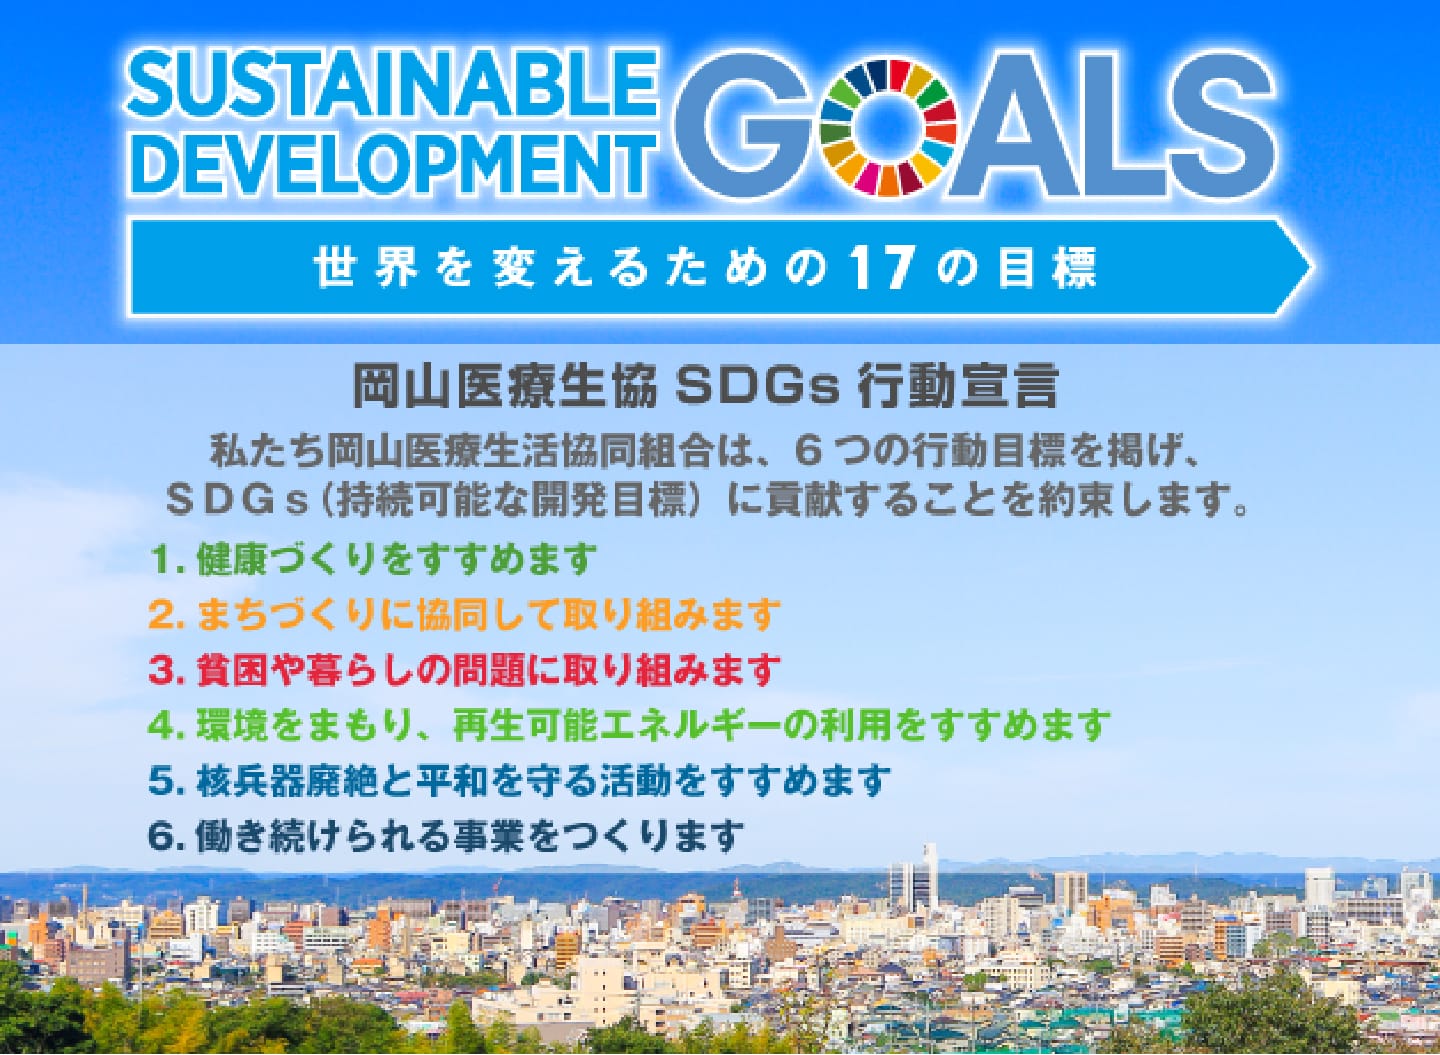 岡山医療生協は6つの行動目標を掲げSDGsに貢献することを約束します。